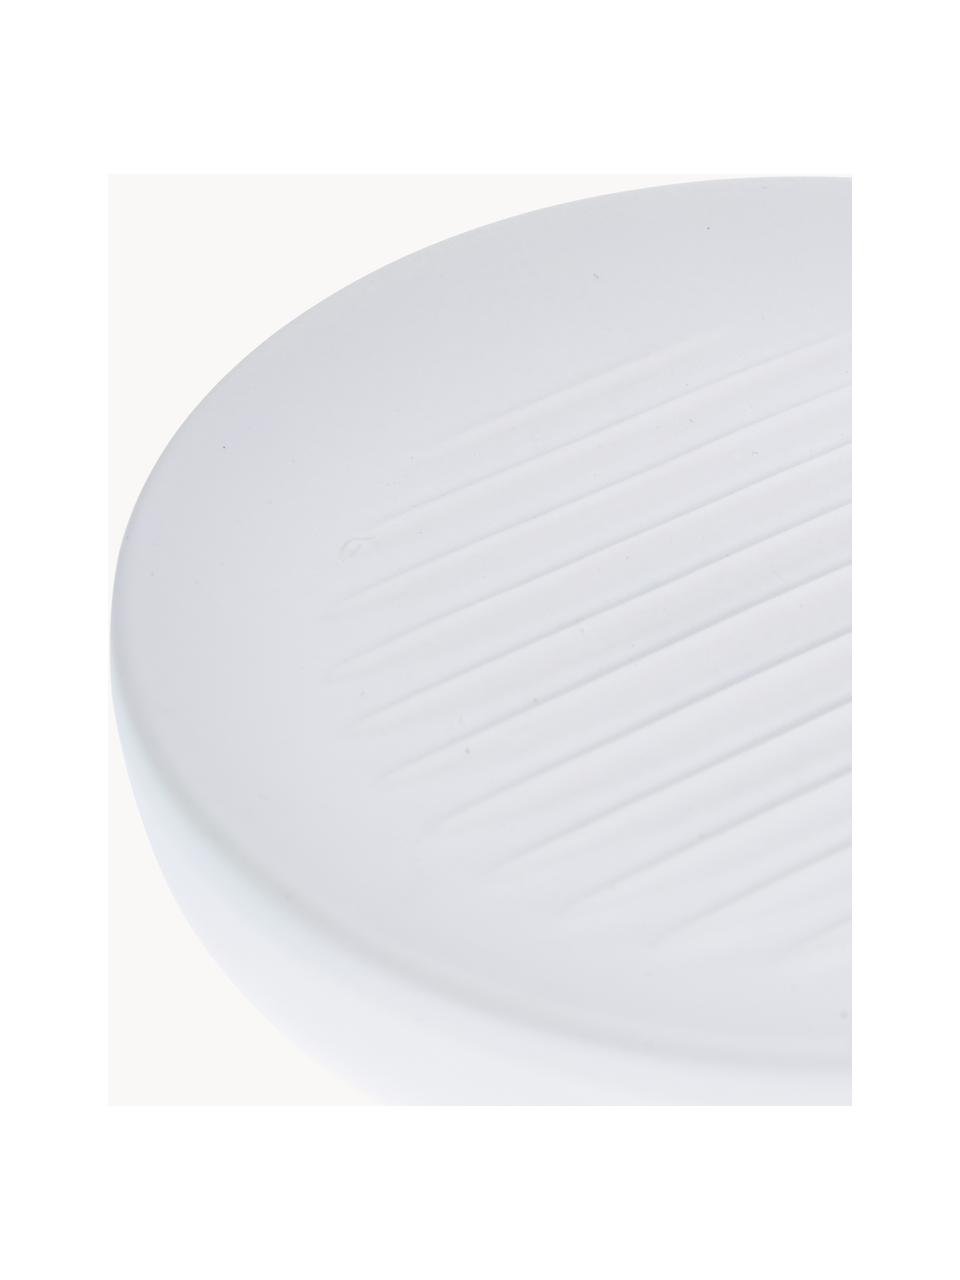 Seifenschale Ume mit Soft-Touch Oberfläche, Steingut überzogen mit Soft-Touch-Oberfläche (Kunststoff), Weiß, Ø 12 x H 3 cm